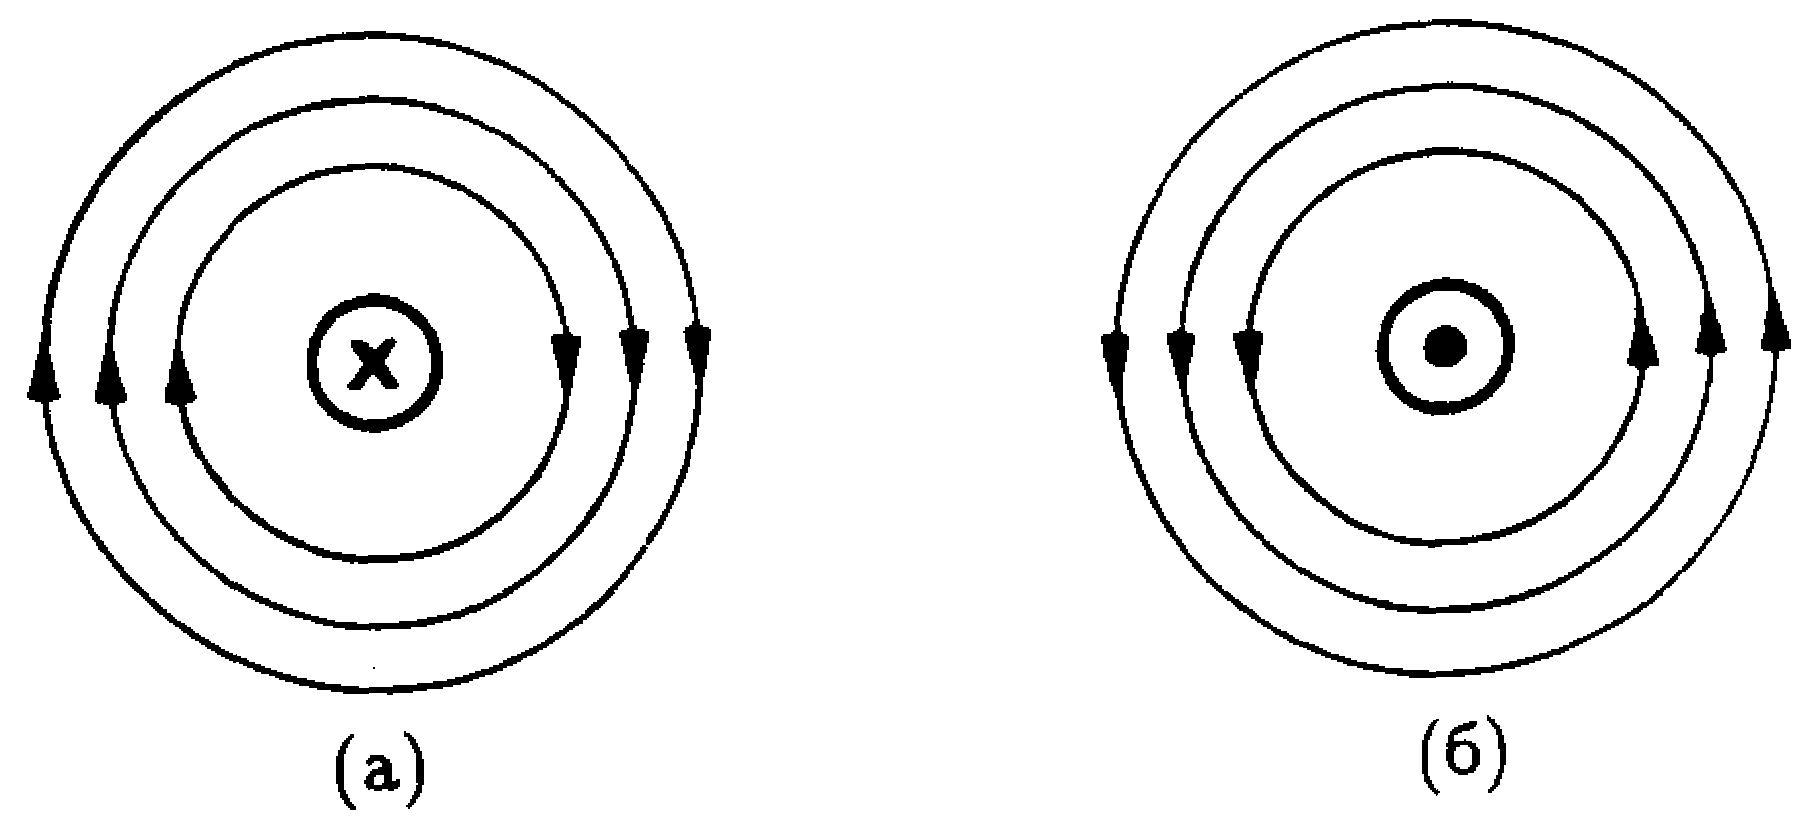 Линии магнитной индукции прямого проводника. Линии магнитного поля проводника с током. Направление магнитного поля вокруг проводника. Направление линий магнитного поля прямого проводника с током. Направление магнитных линий по часовой стрелке